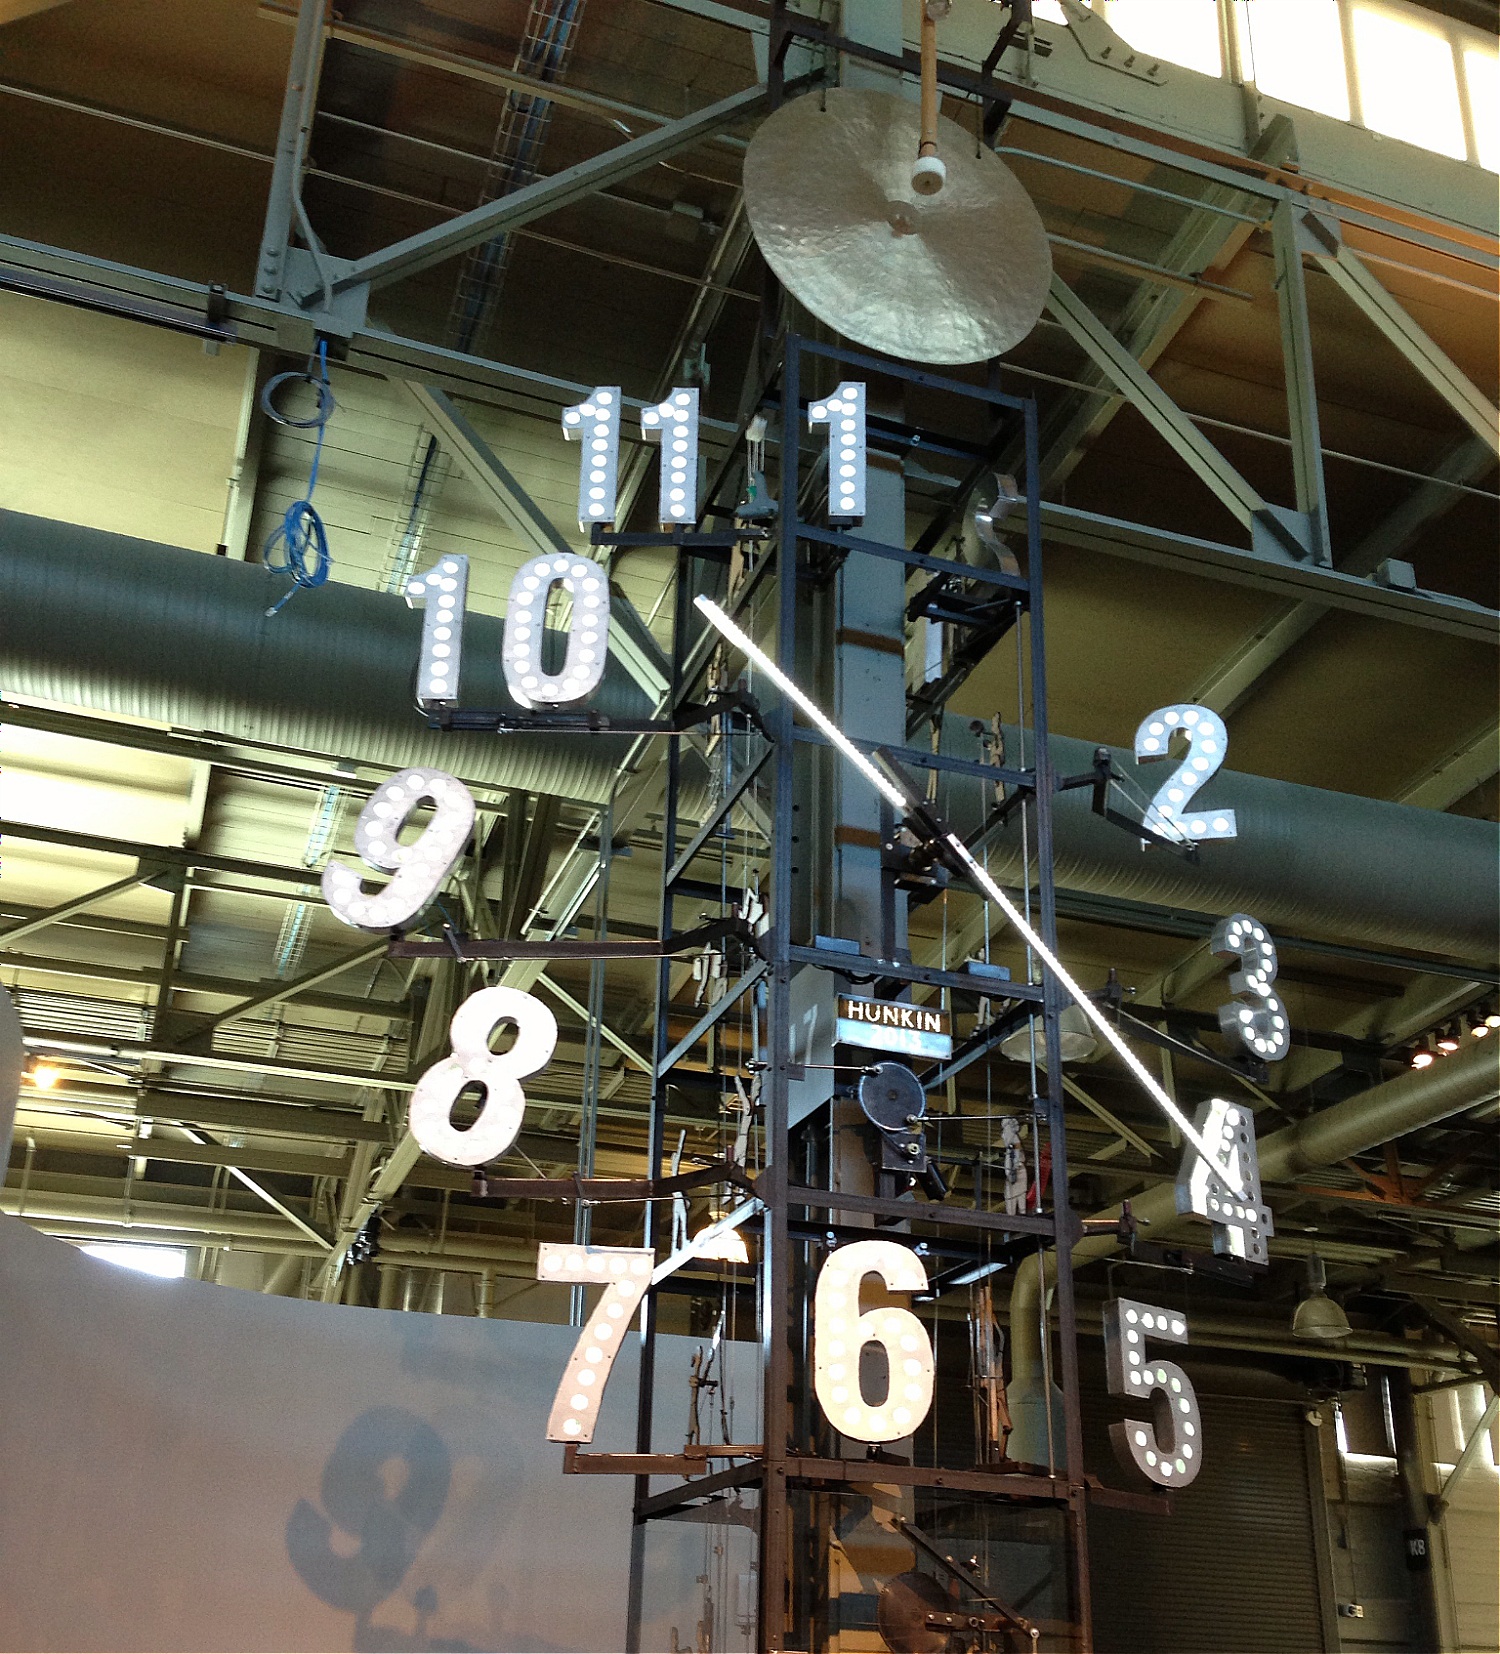 [image] Exploratorium clock